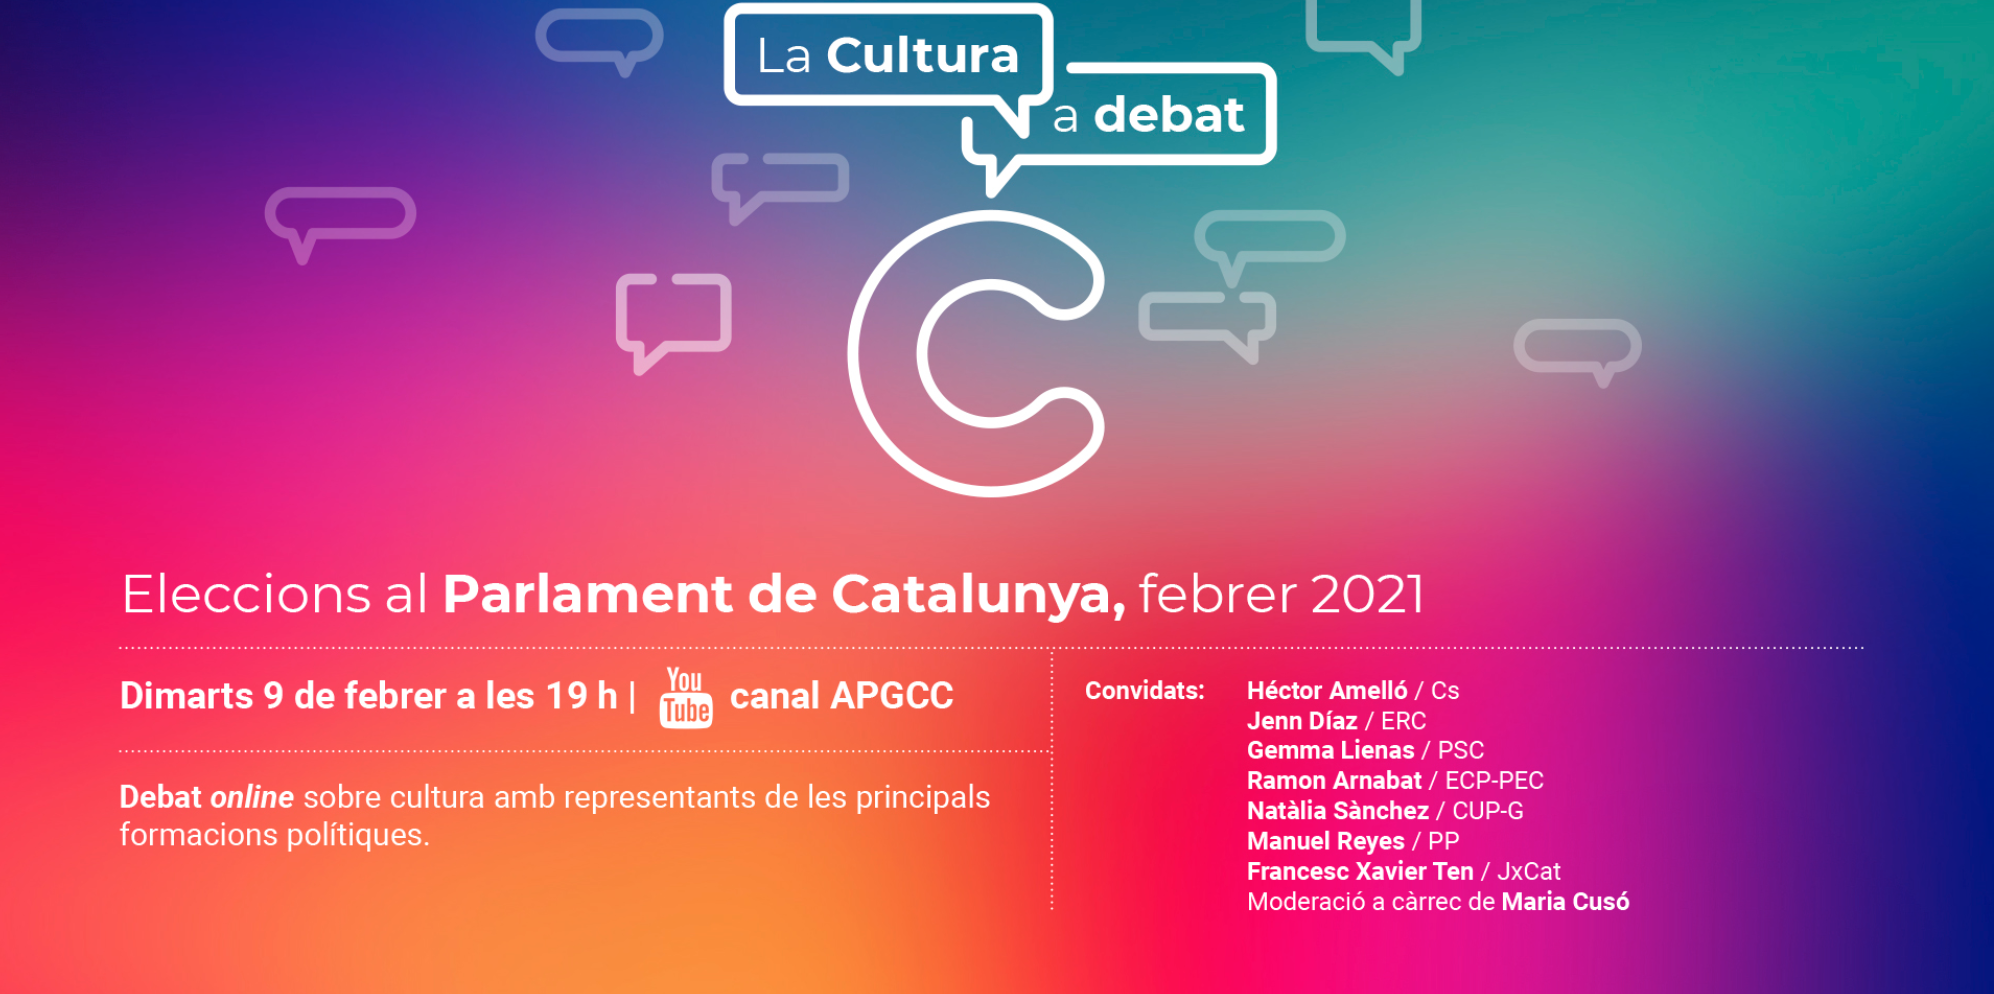 L’Associació de Professionals de la Gestió Cultural de Catalunya organitza una nova edició de ‘La Cultura a debat’ amb motiu de les eleccions